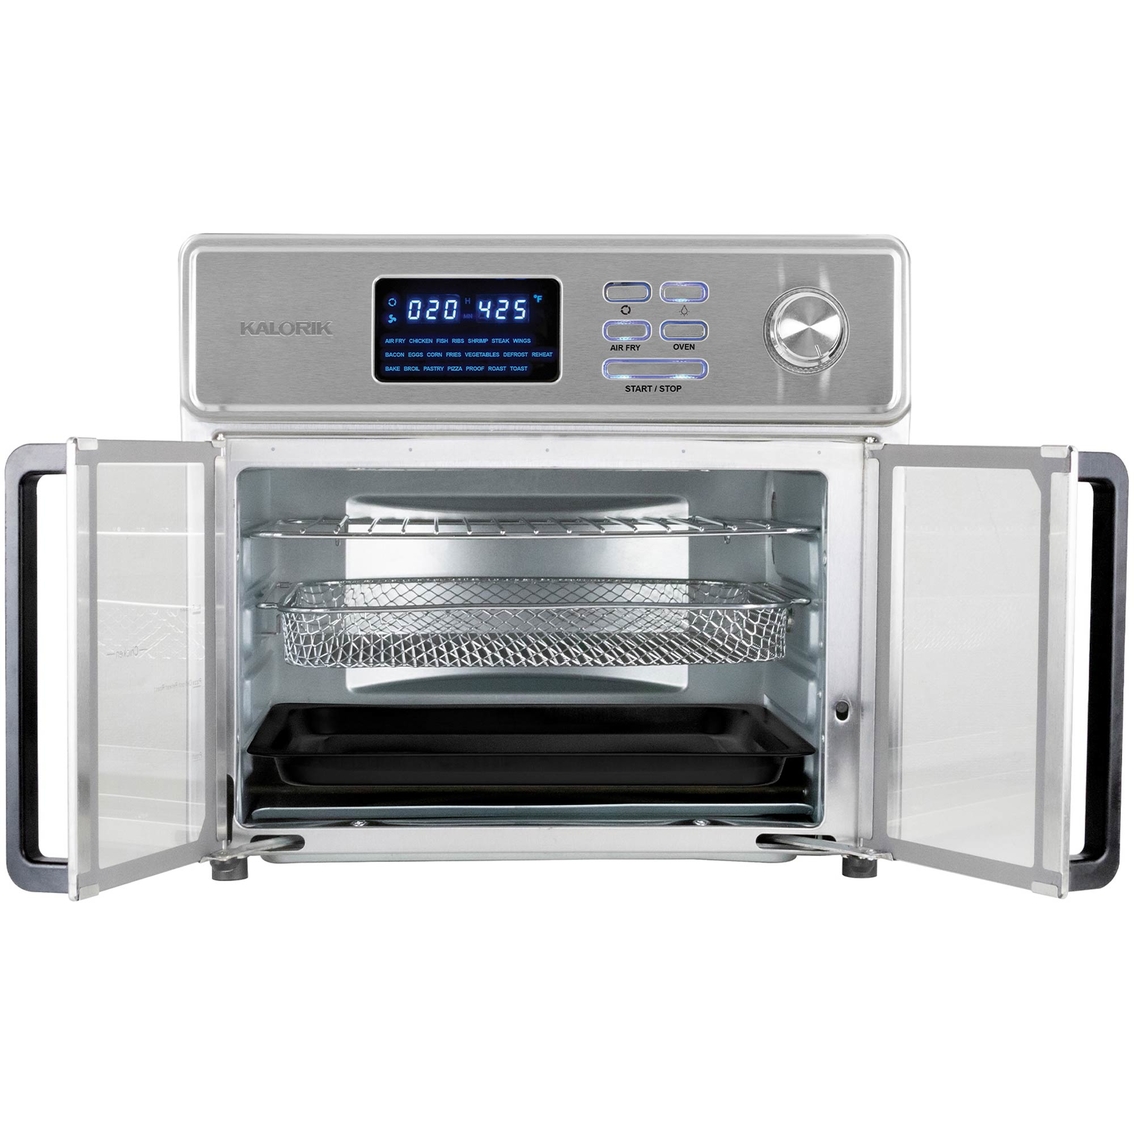 Kalorik 26 qt. Digital Maxx Air Fryer Oven - Image 3 of 7